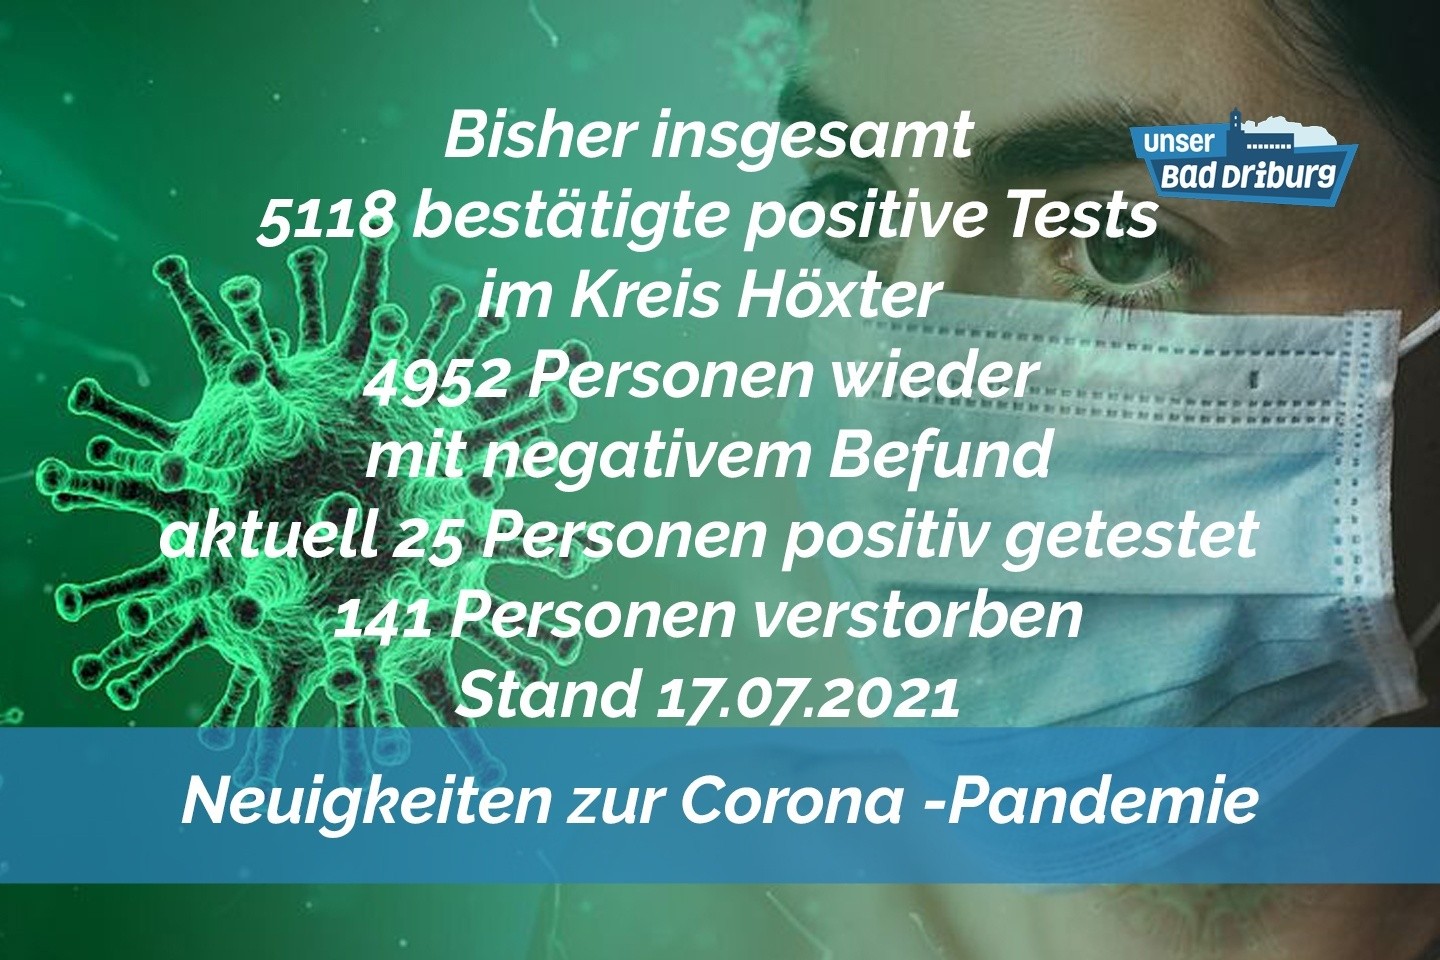 Update 17. Juli: Sechs weitere amtlich positive Tests im Kreis Höxter